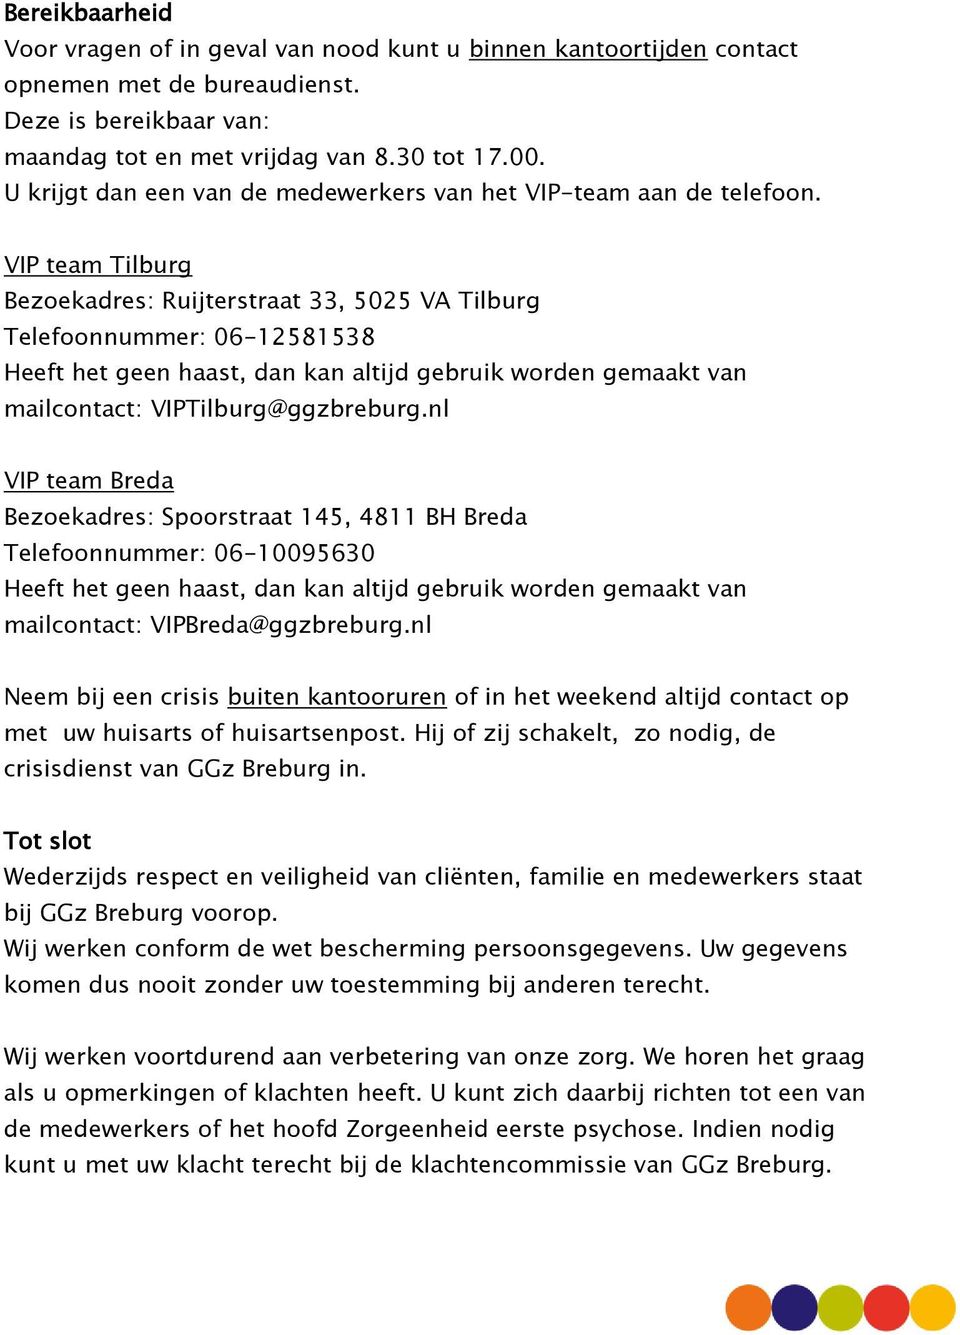 VIP team Tilburg Bezoekadres: Ruijterstraat 33, 5025 VA Tilburg Telefoonnummer: 06-12581538 Heeft het geen haast, dan kan altijd gebruik worden gemaakt van mailcontact: VIPTilburg@ggzbreburg.